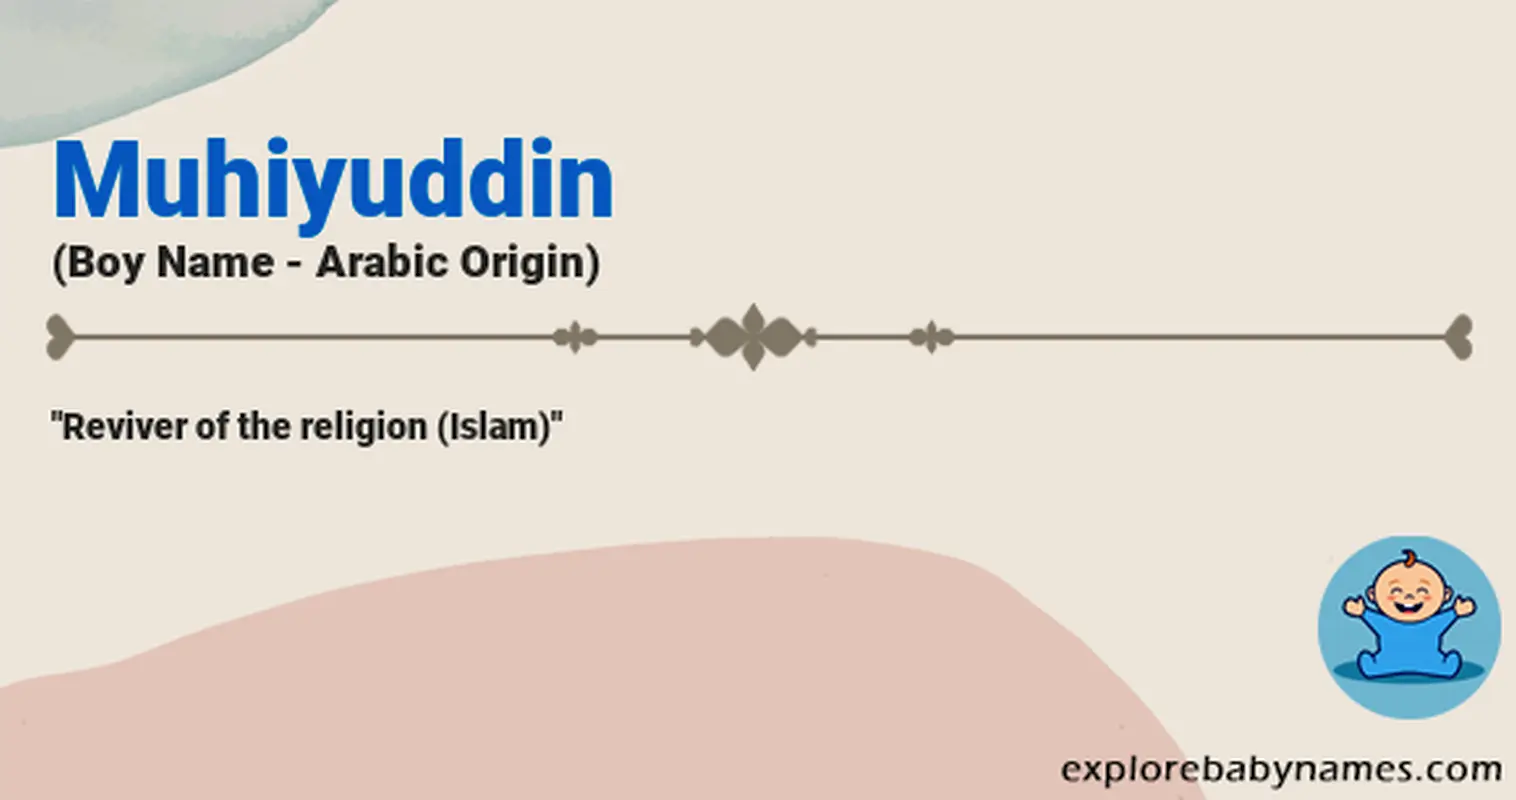 Meaning of Muhiyuddin